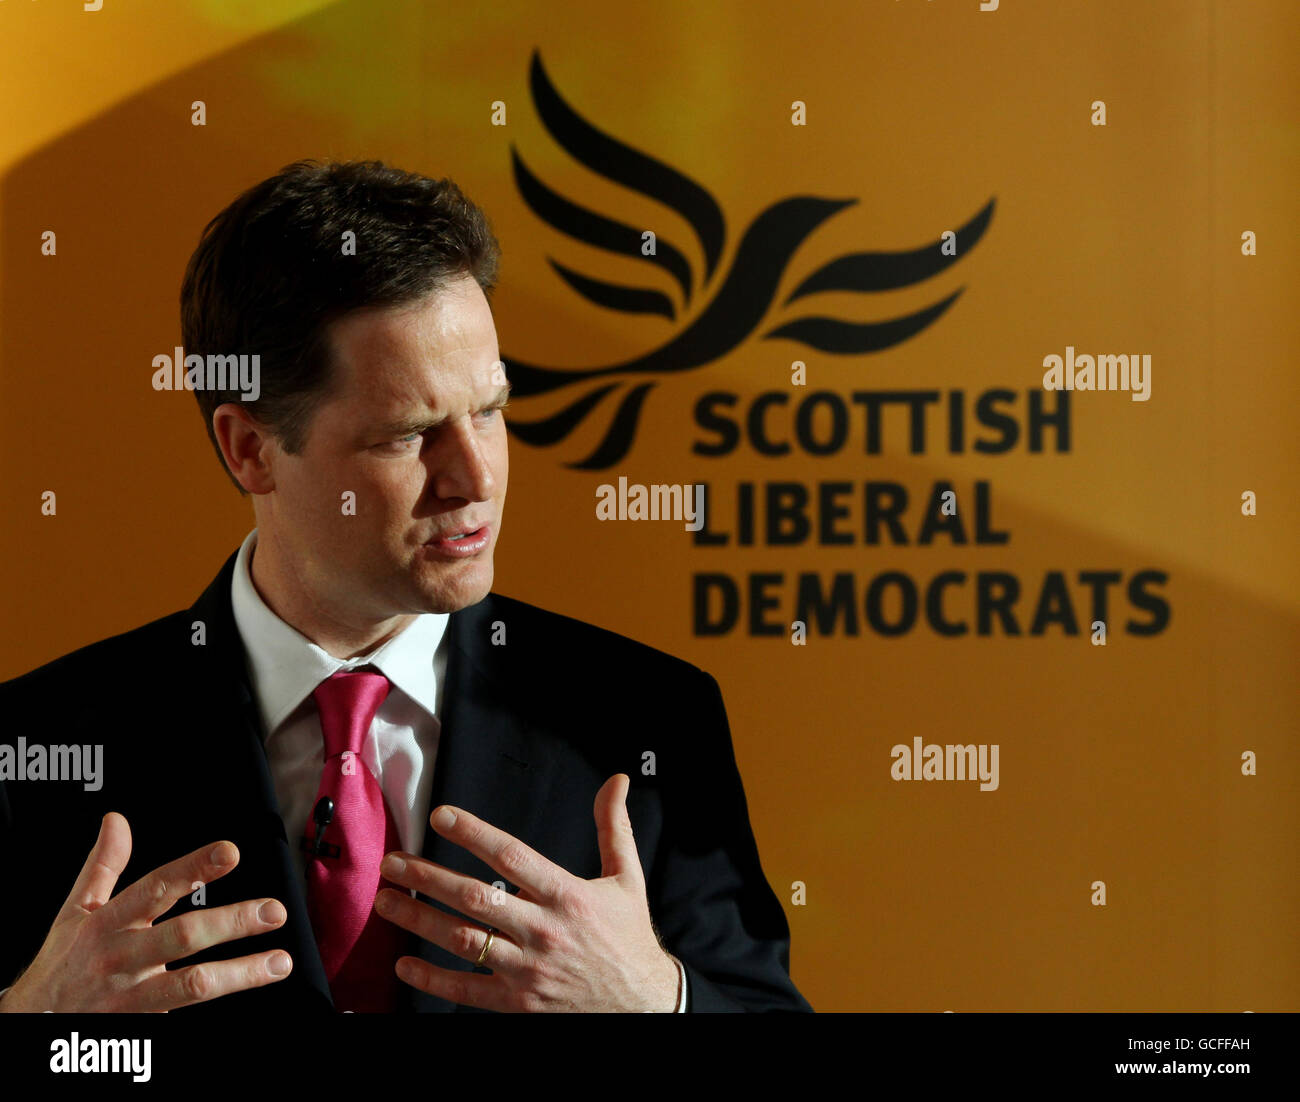 Der liberale Demokrat Nick Clegg spricht während einer Pressekonferenz auf unserer dynamischen Erde in Edinburgh, Schottland, während er seinen Wahlkampf fortsetzt. Stockfoto